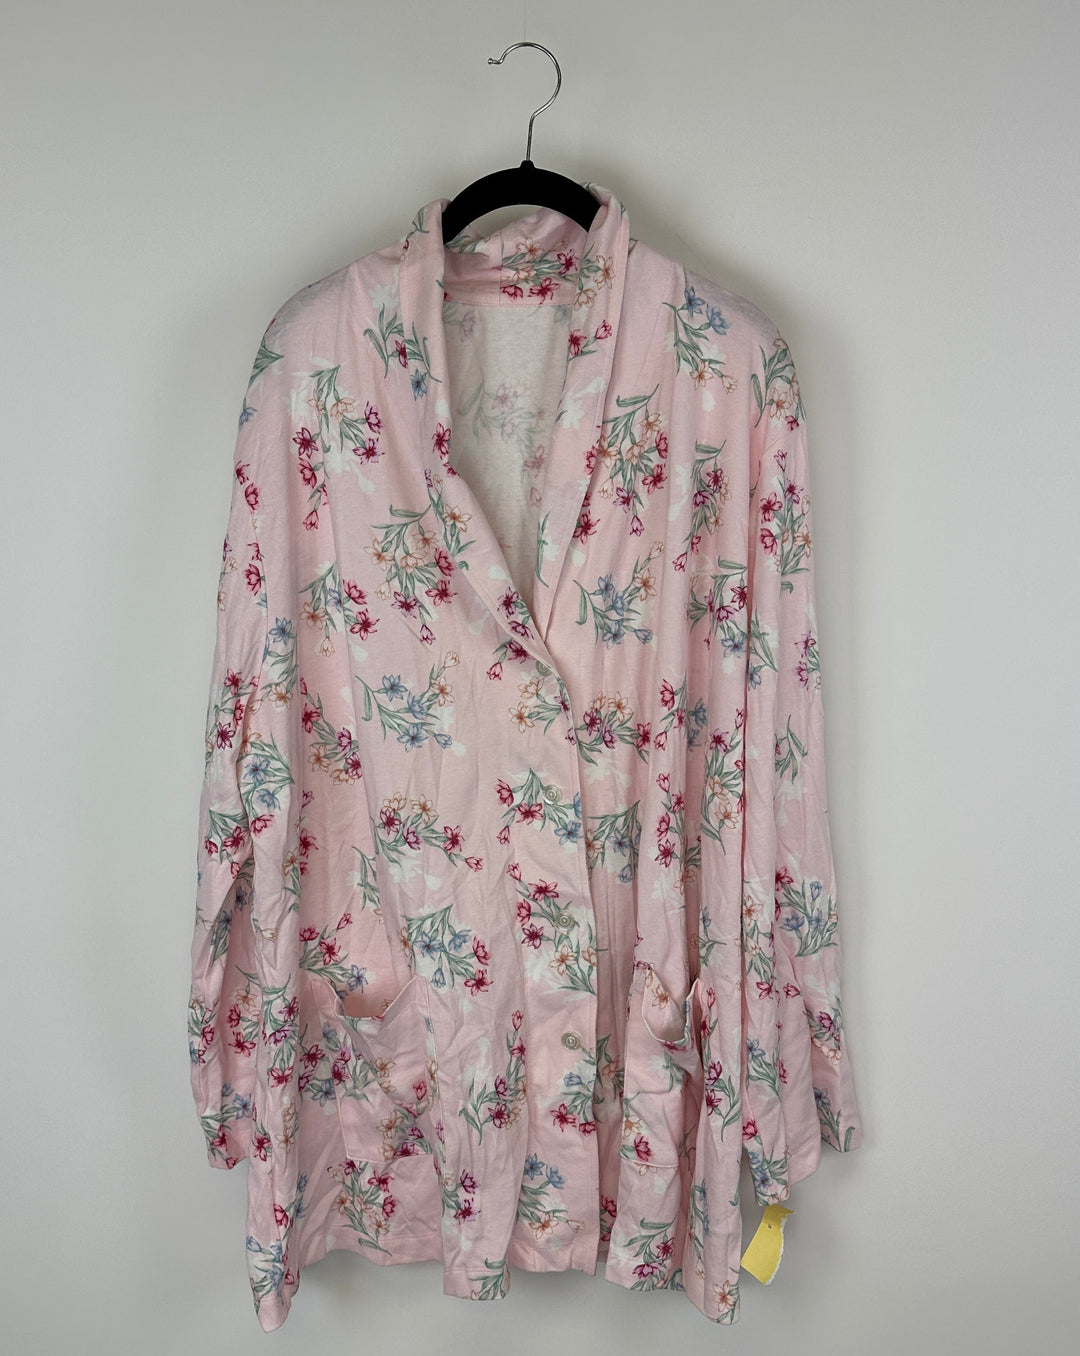 Pink Floral Pajama Top - 1X